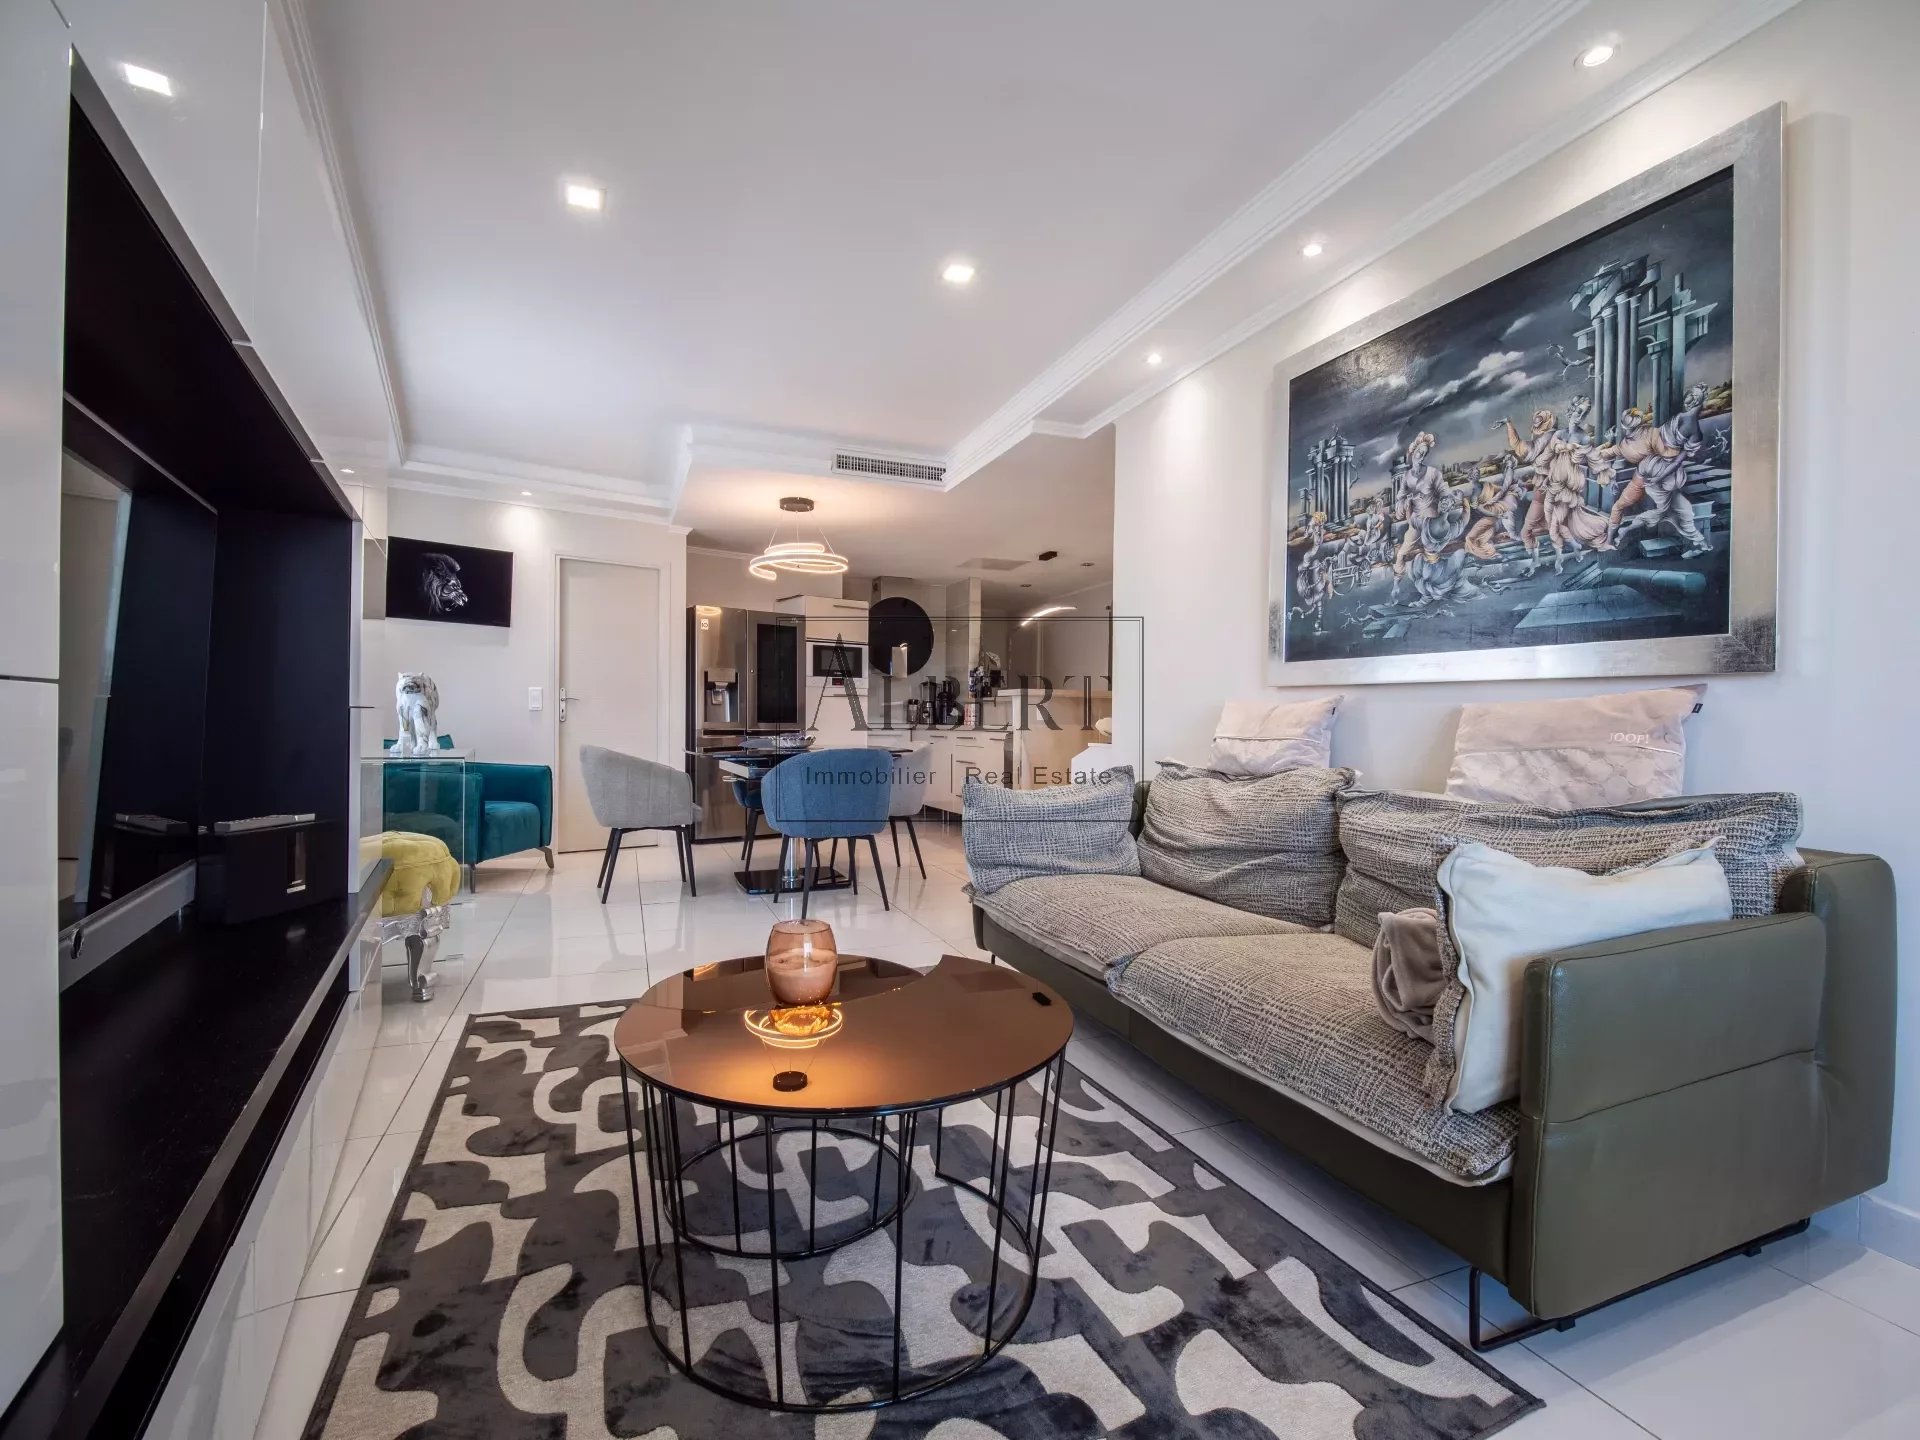 Vente Appartement 68m² 3 Pièces à Cannes (06400) - Albert Immobilier